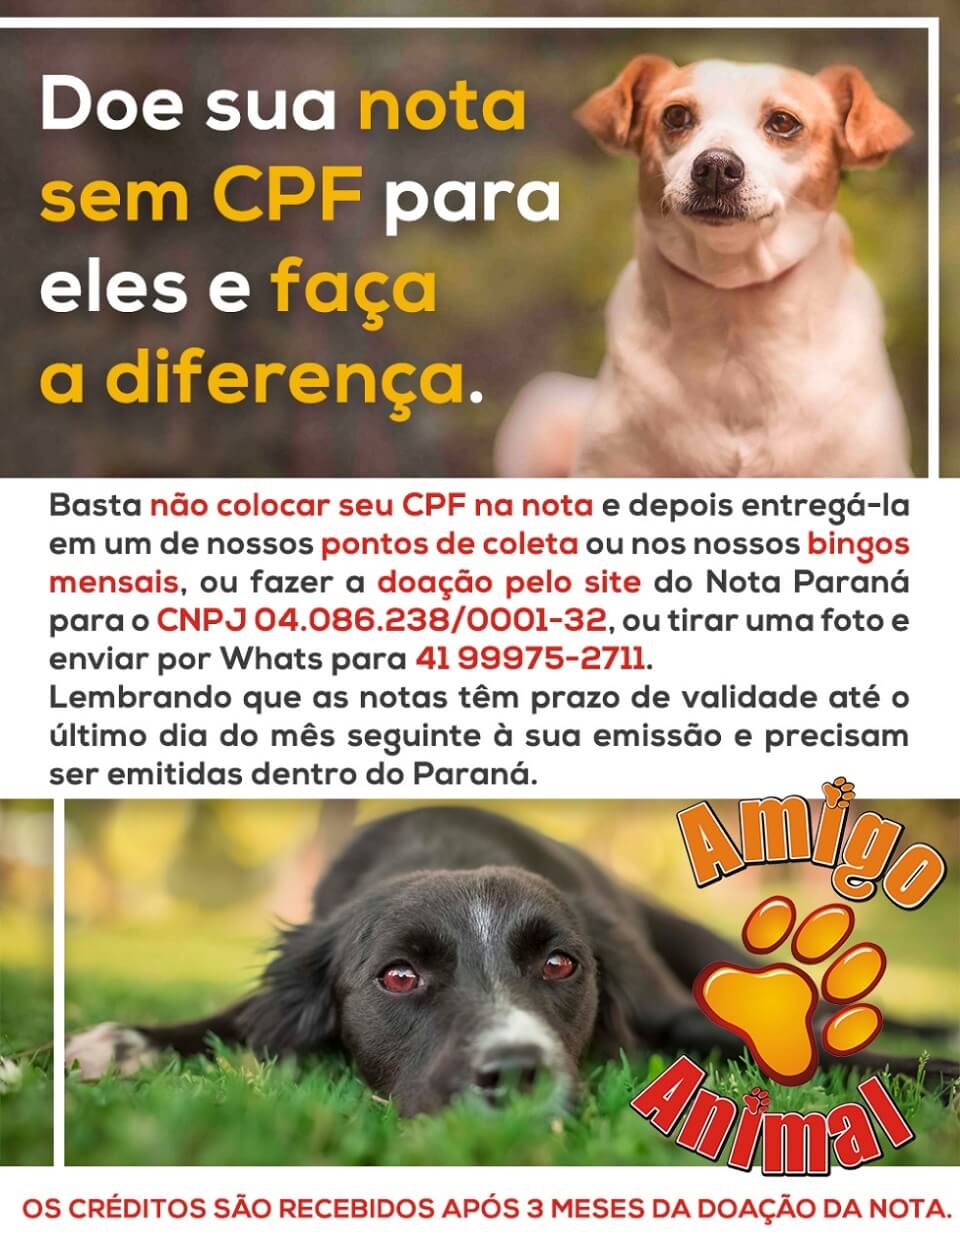 É bem fácil ajudar! Clique na imagem e confira todos os detalhes! A Amigo Animal é uma associação sem fins lucrativos que abriga mais de 1000 cachorros resgatados em Curitiba e região.